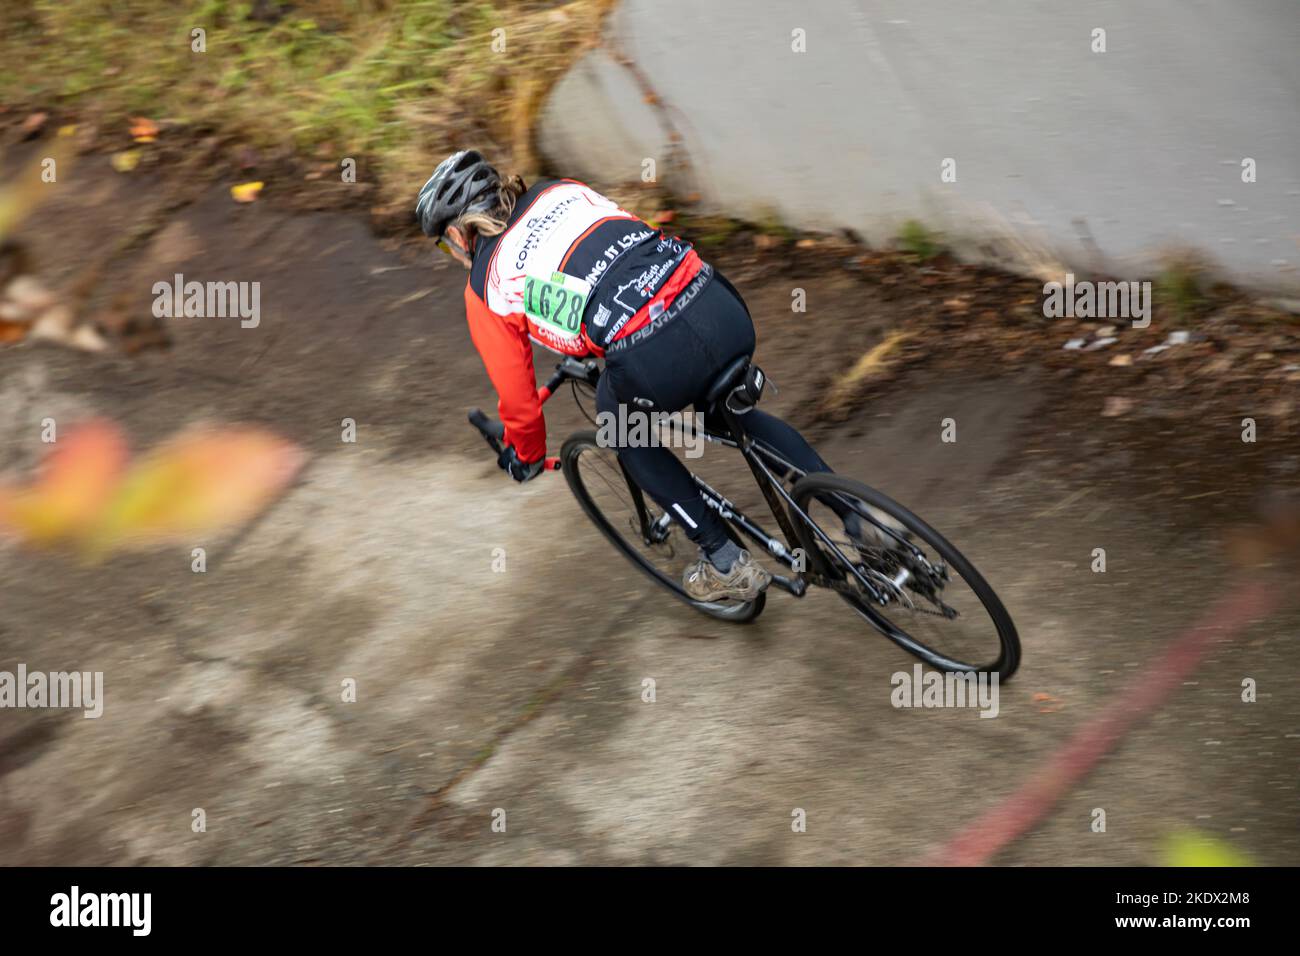 WA22738-00...WASHINGTON - der Cyclocross-Fahrer Tom Kirkendall fährt auf nassem, rutschigem Untergrund beim Rennen im Magnuson Park in Seattle. Stockfoto